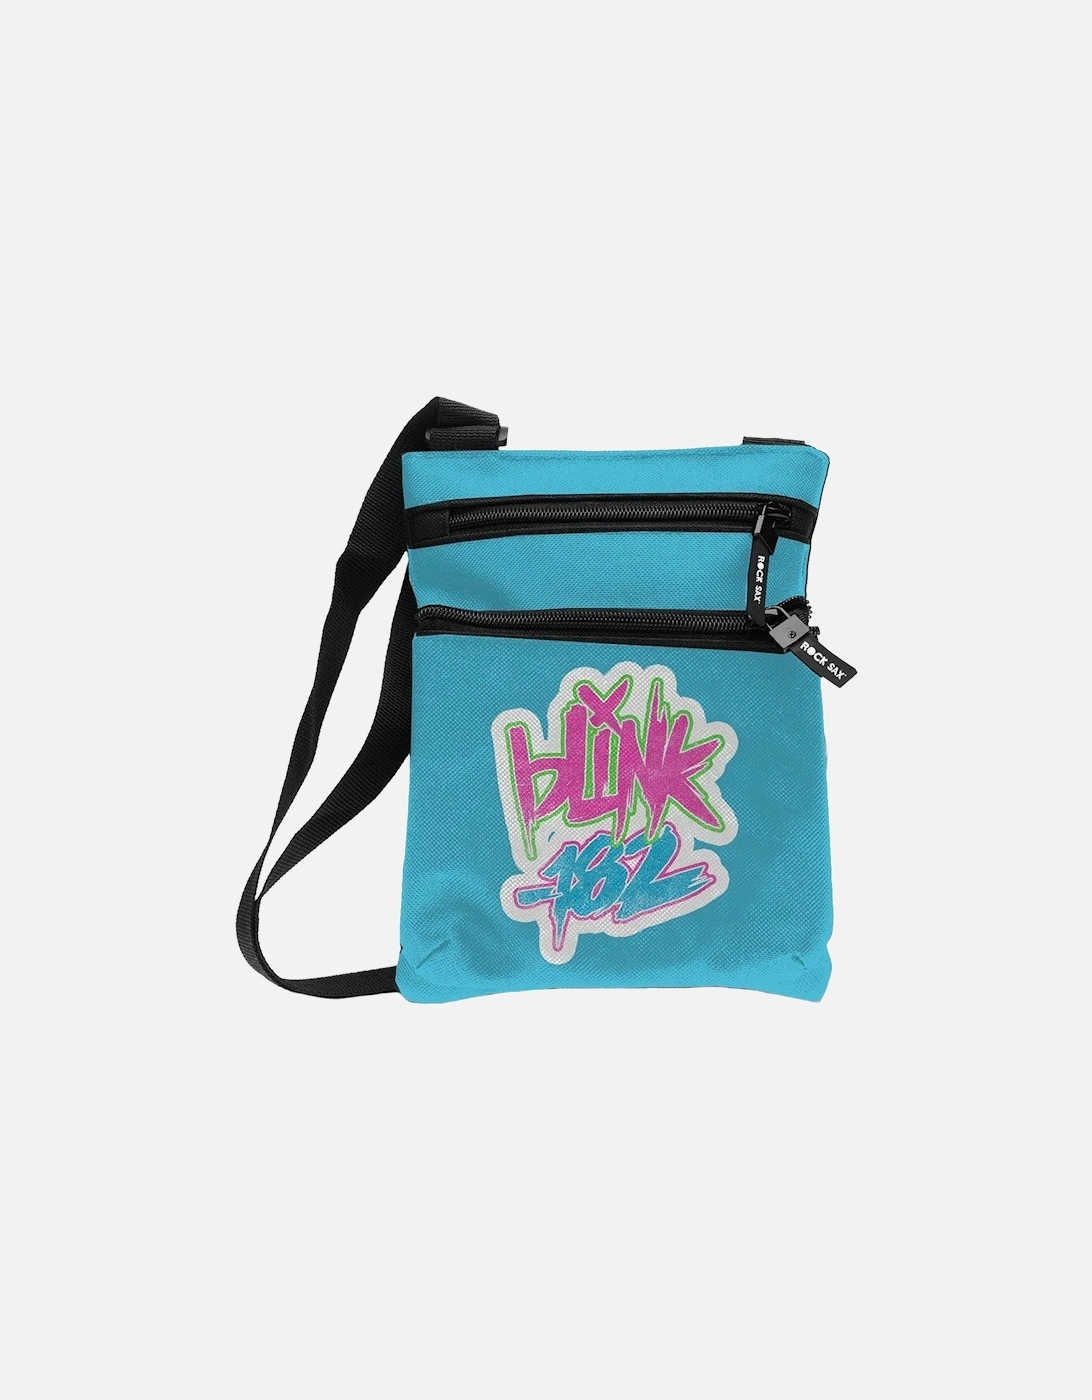 Blink 182 Logo Crossbody Bag, 2 of 1